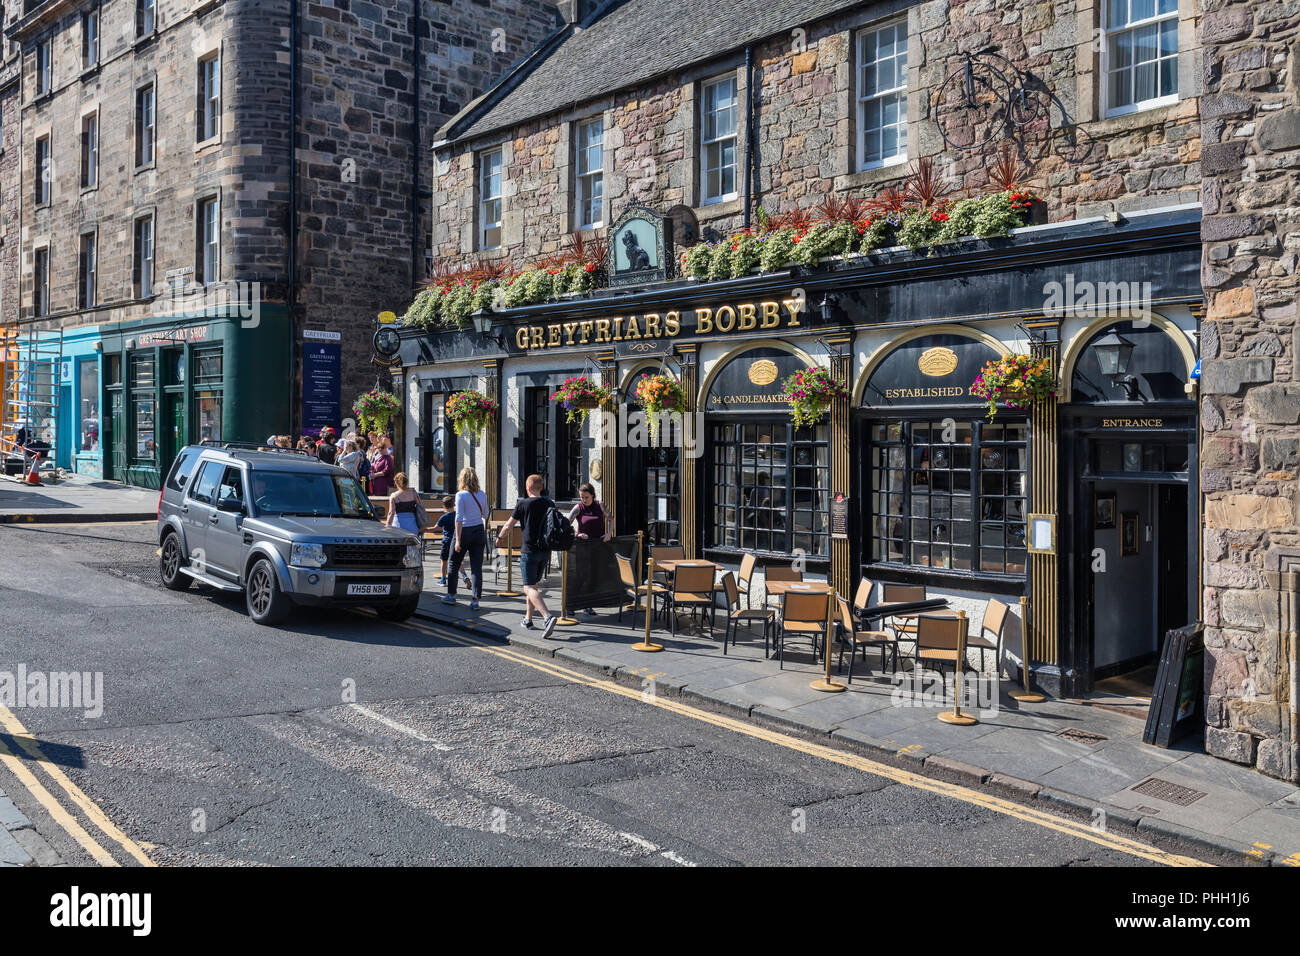 Greyfriars Bobby pub, Edinburgh, Scotland, UK Stock Photo